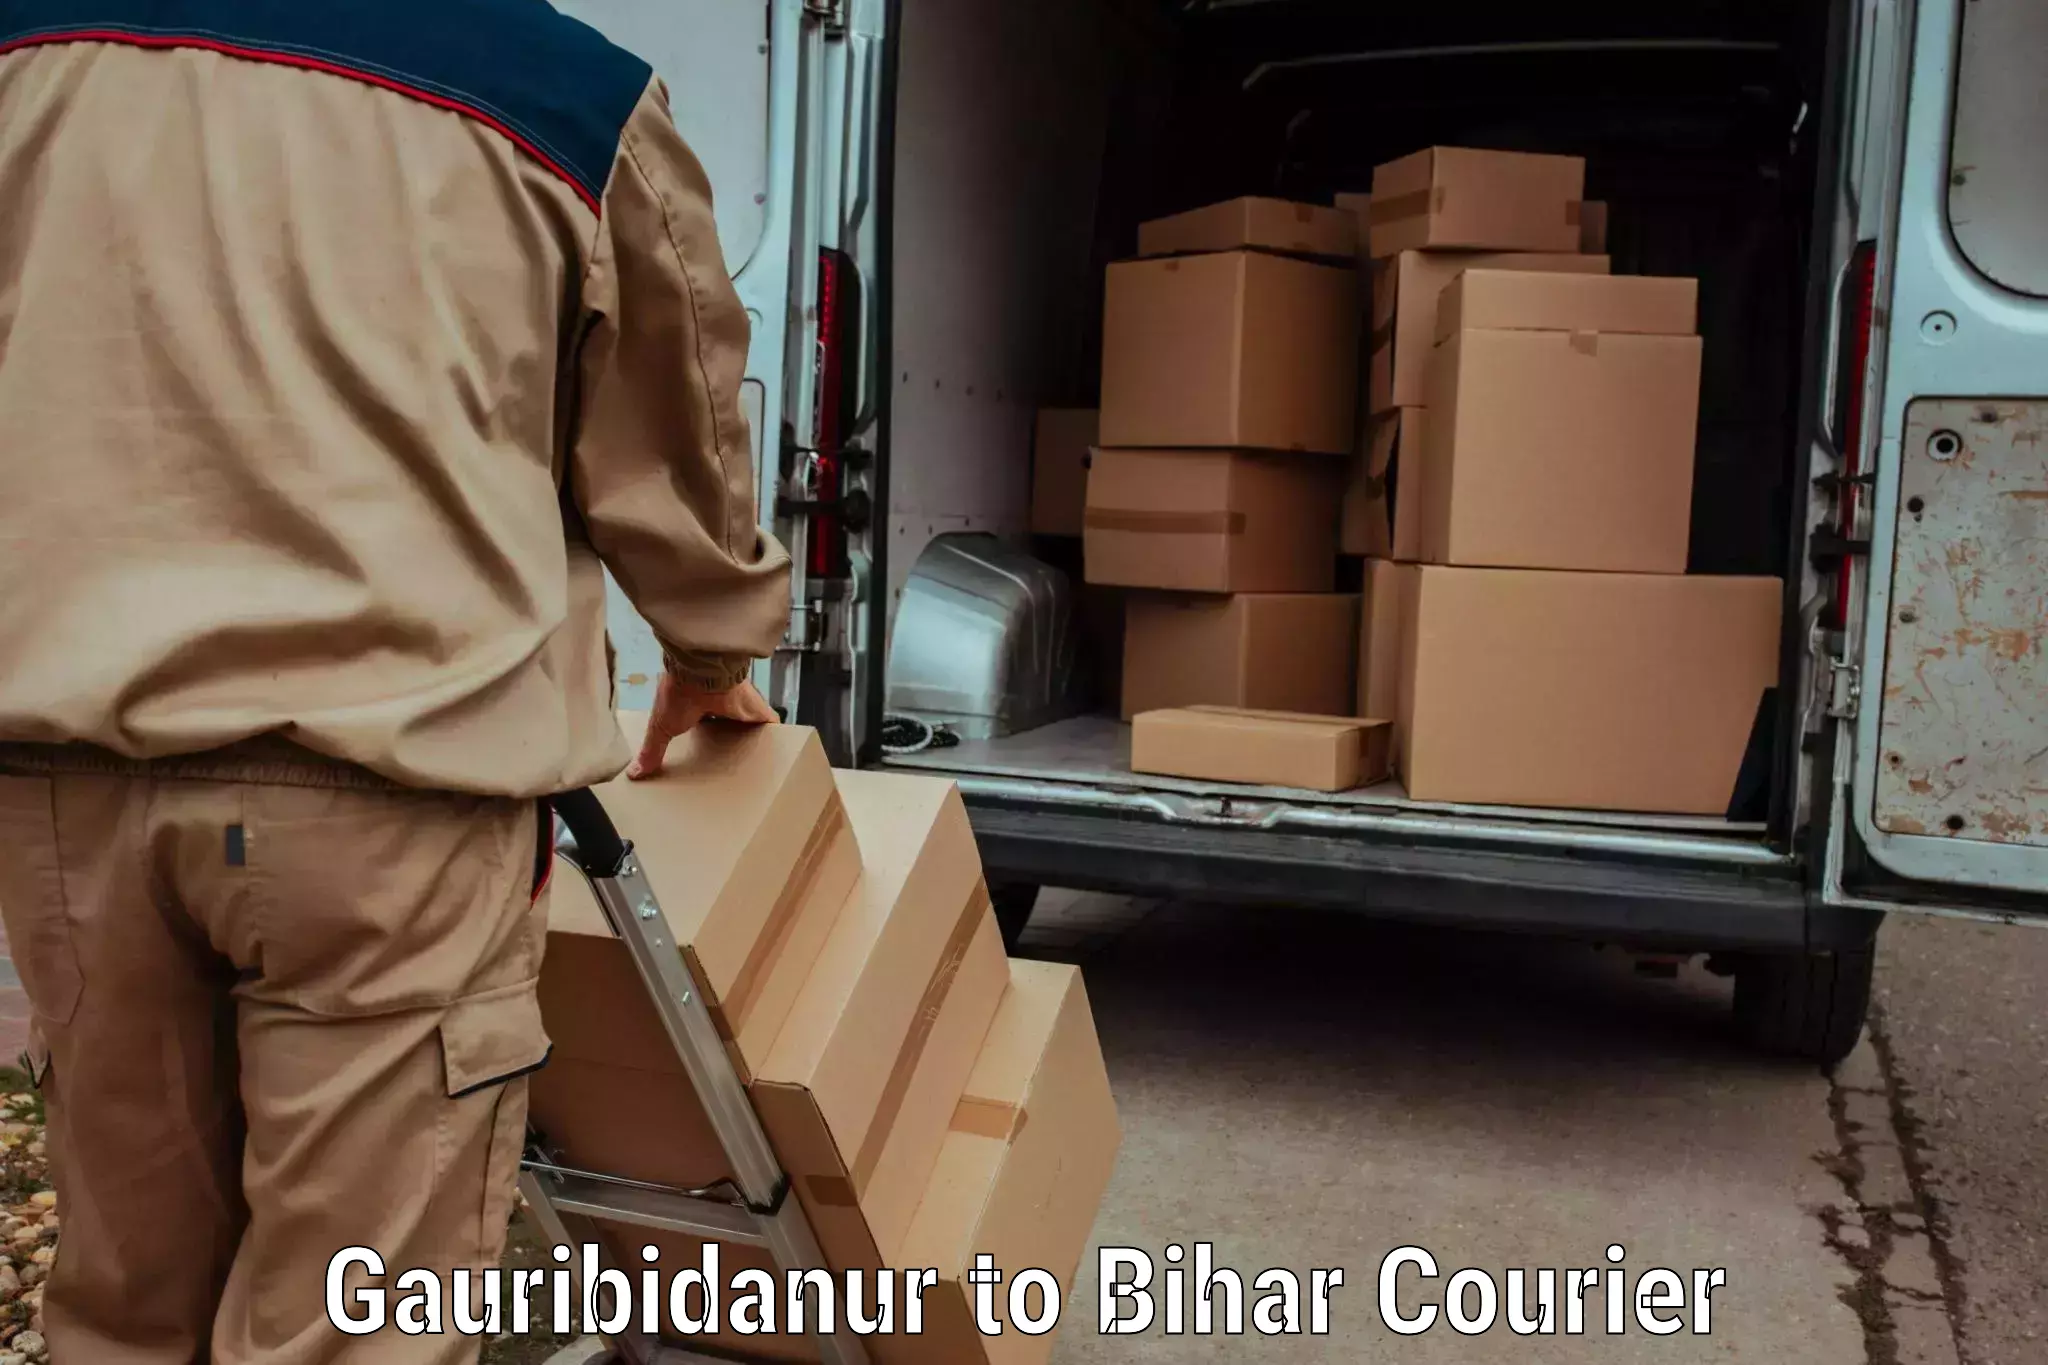 Seamless shipping service Gauribidanur to Buxar